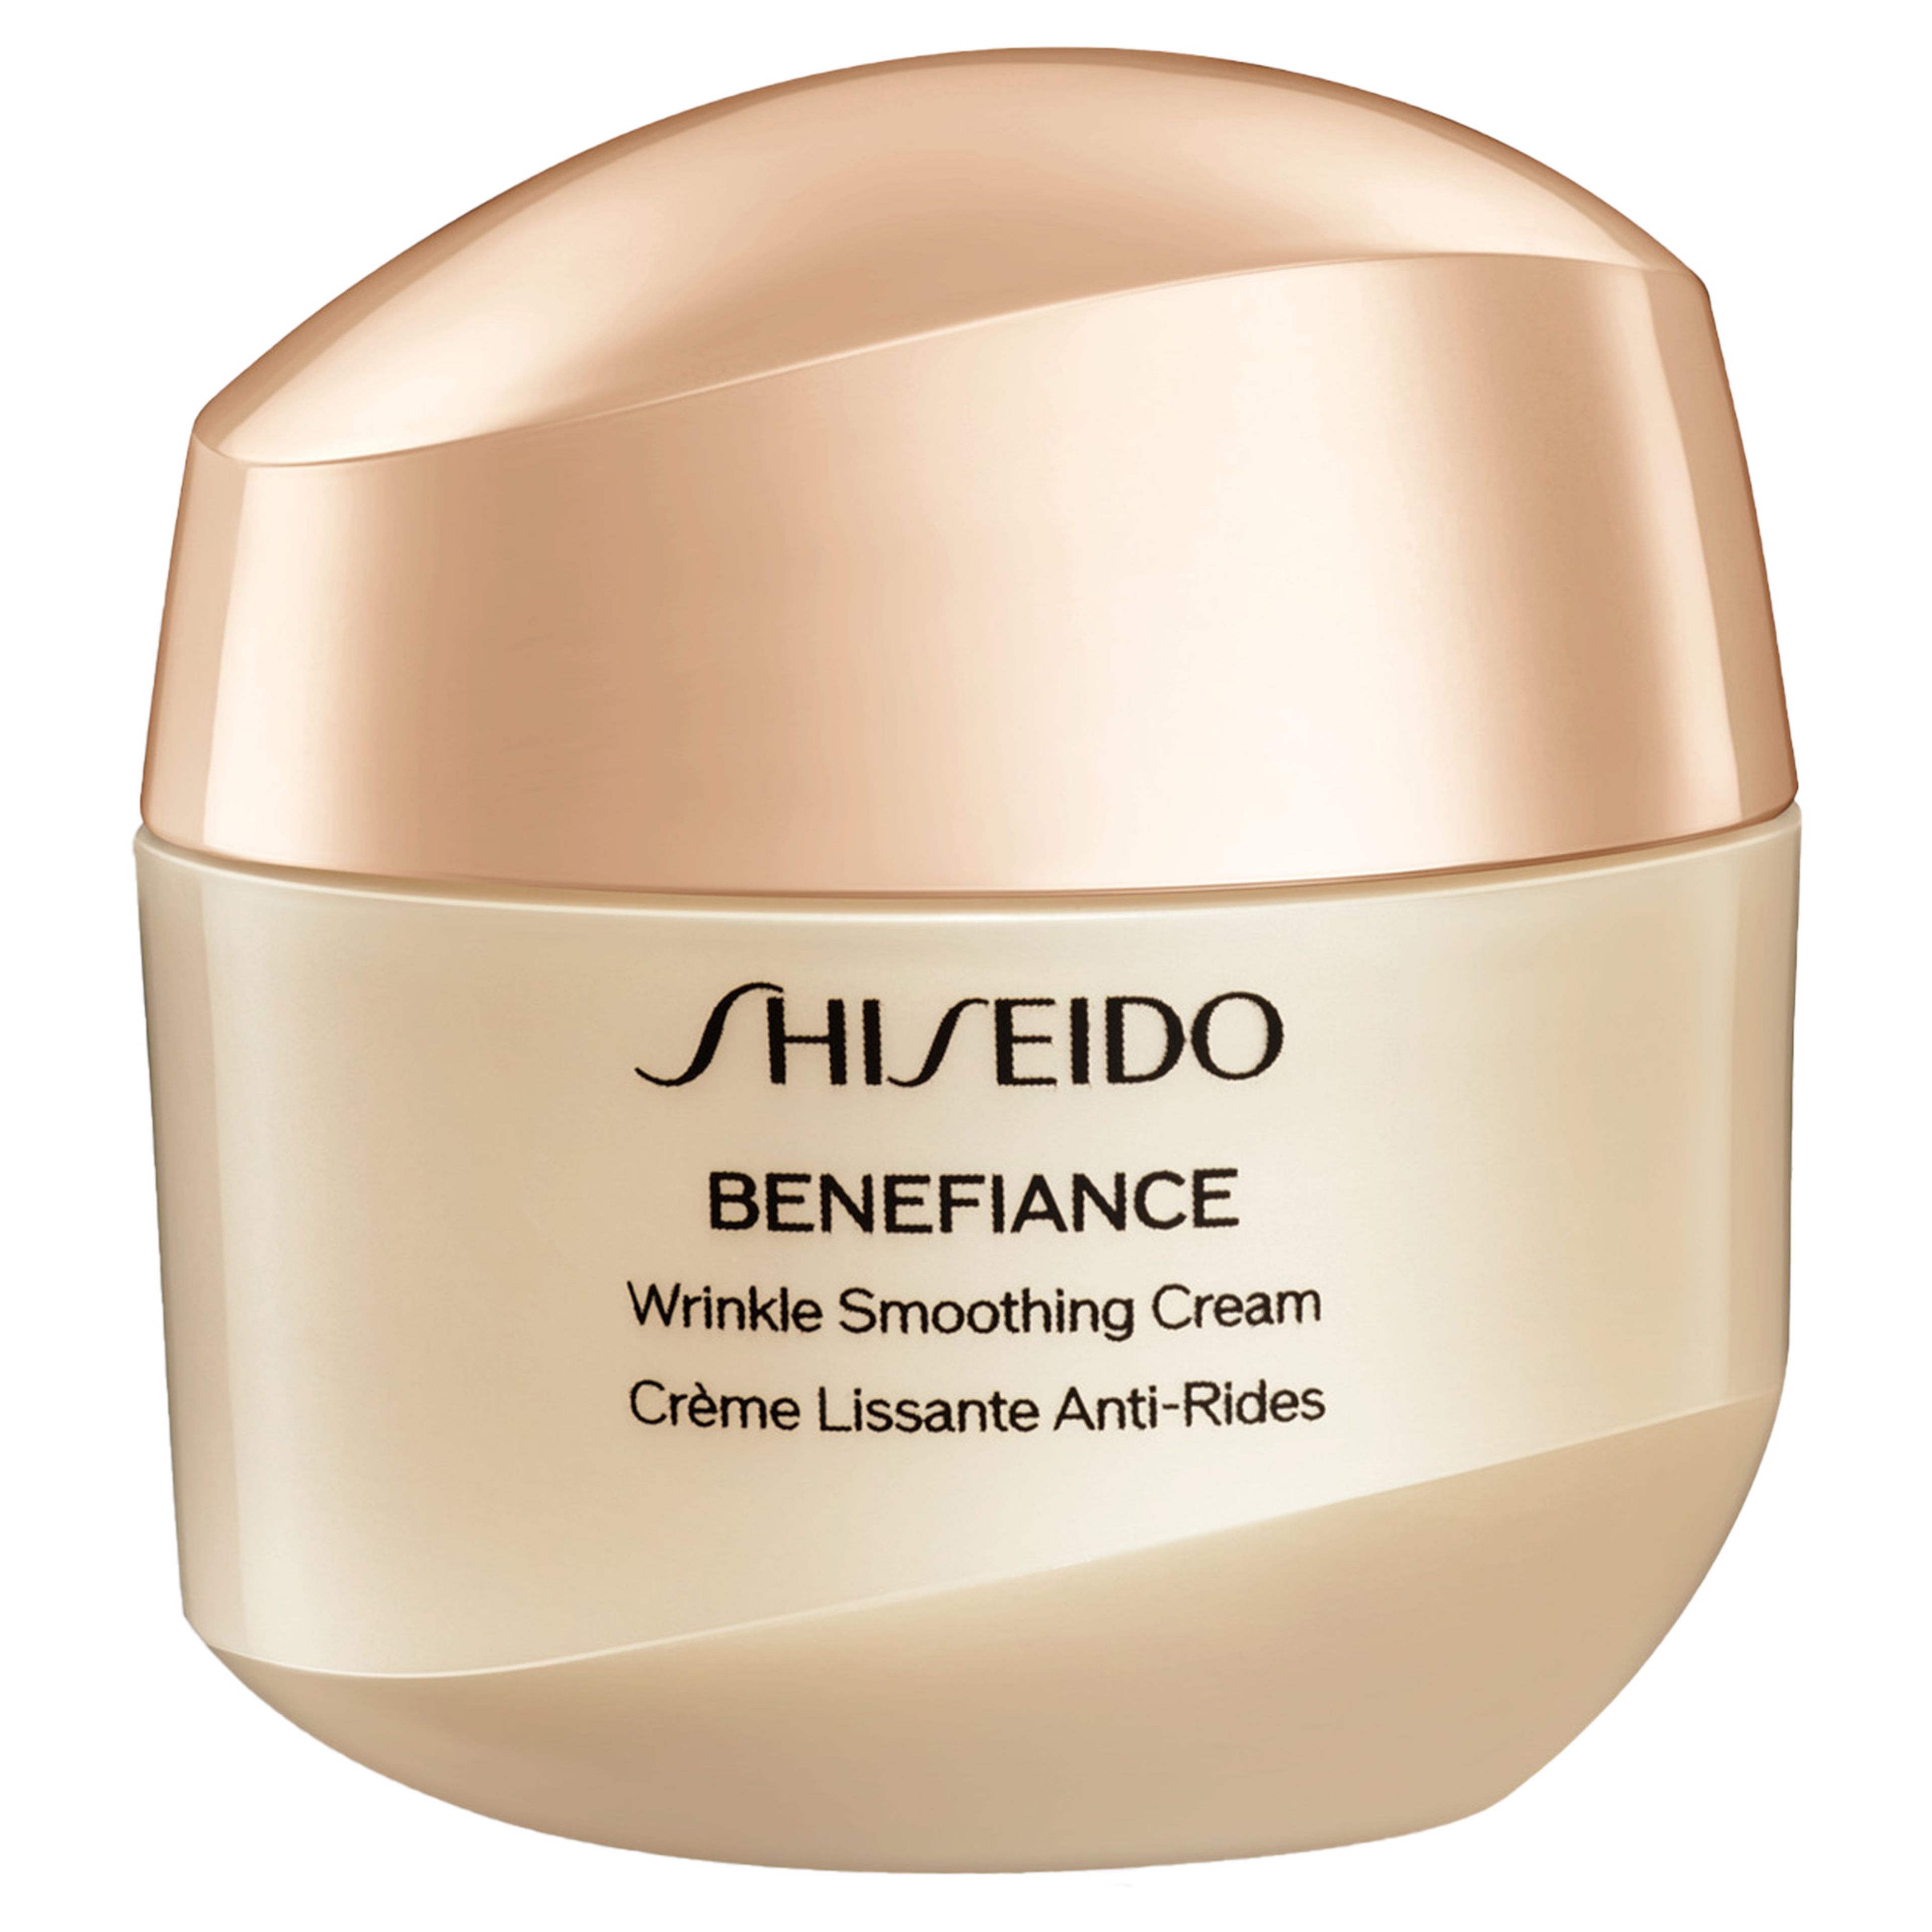 Shiseido Wrinkle Smoothing Cream 1